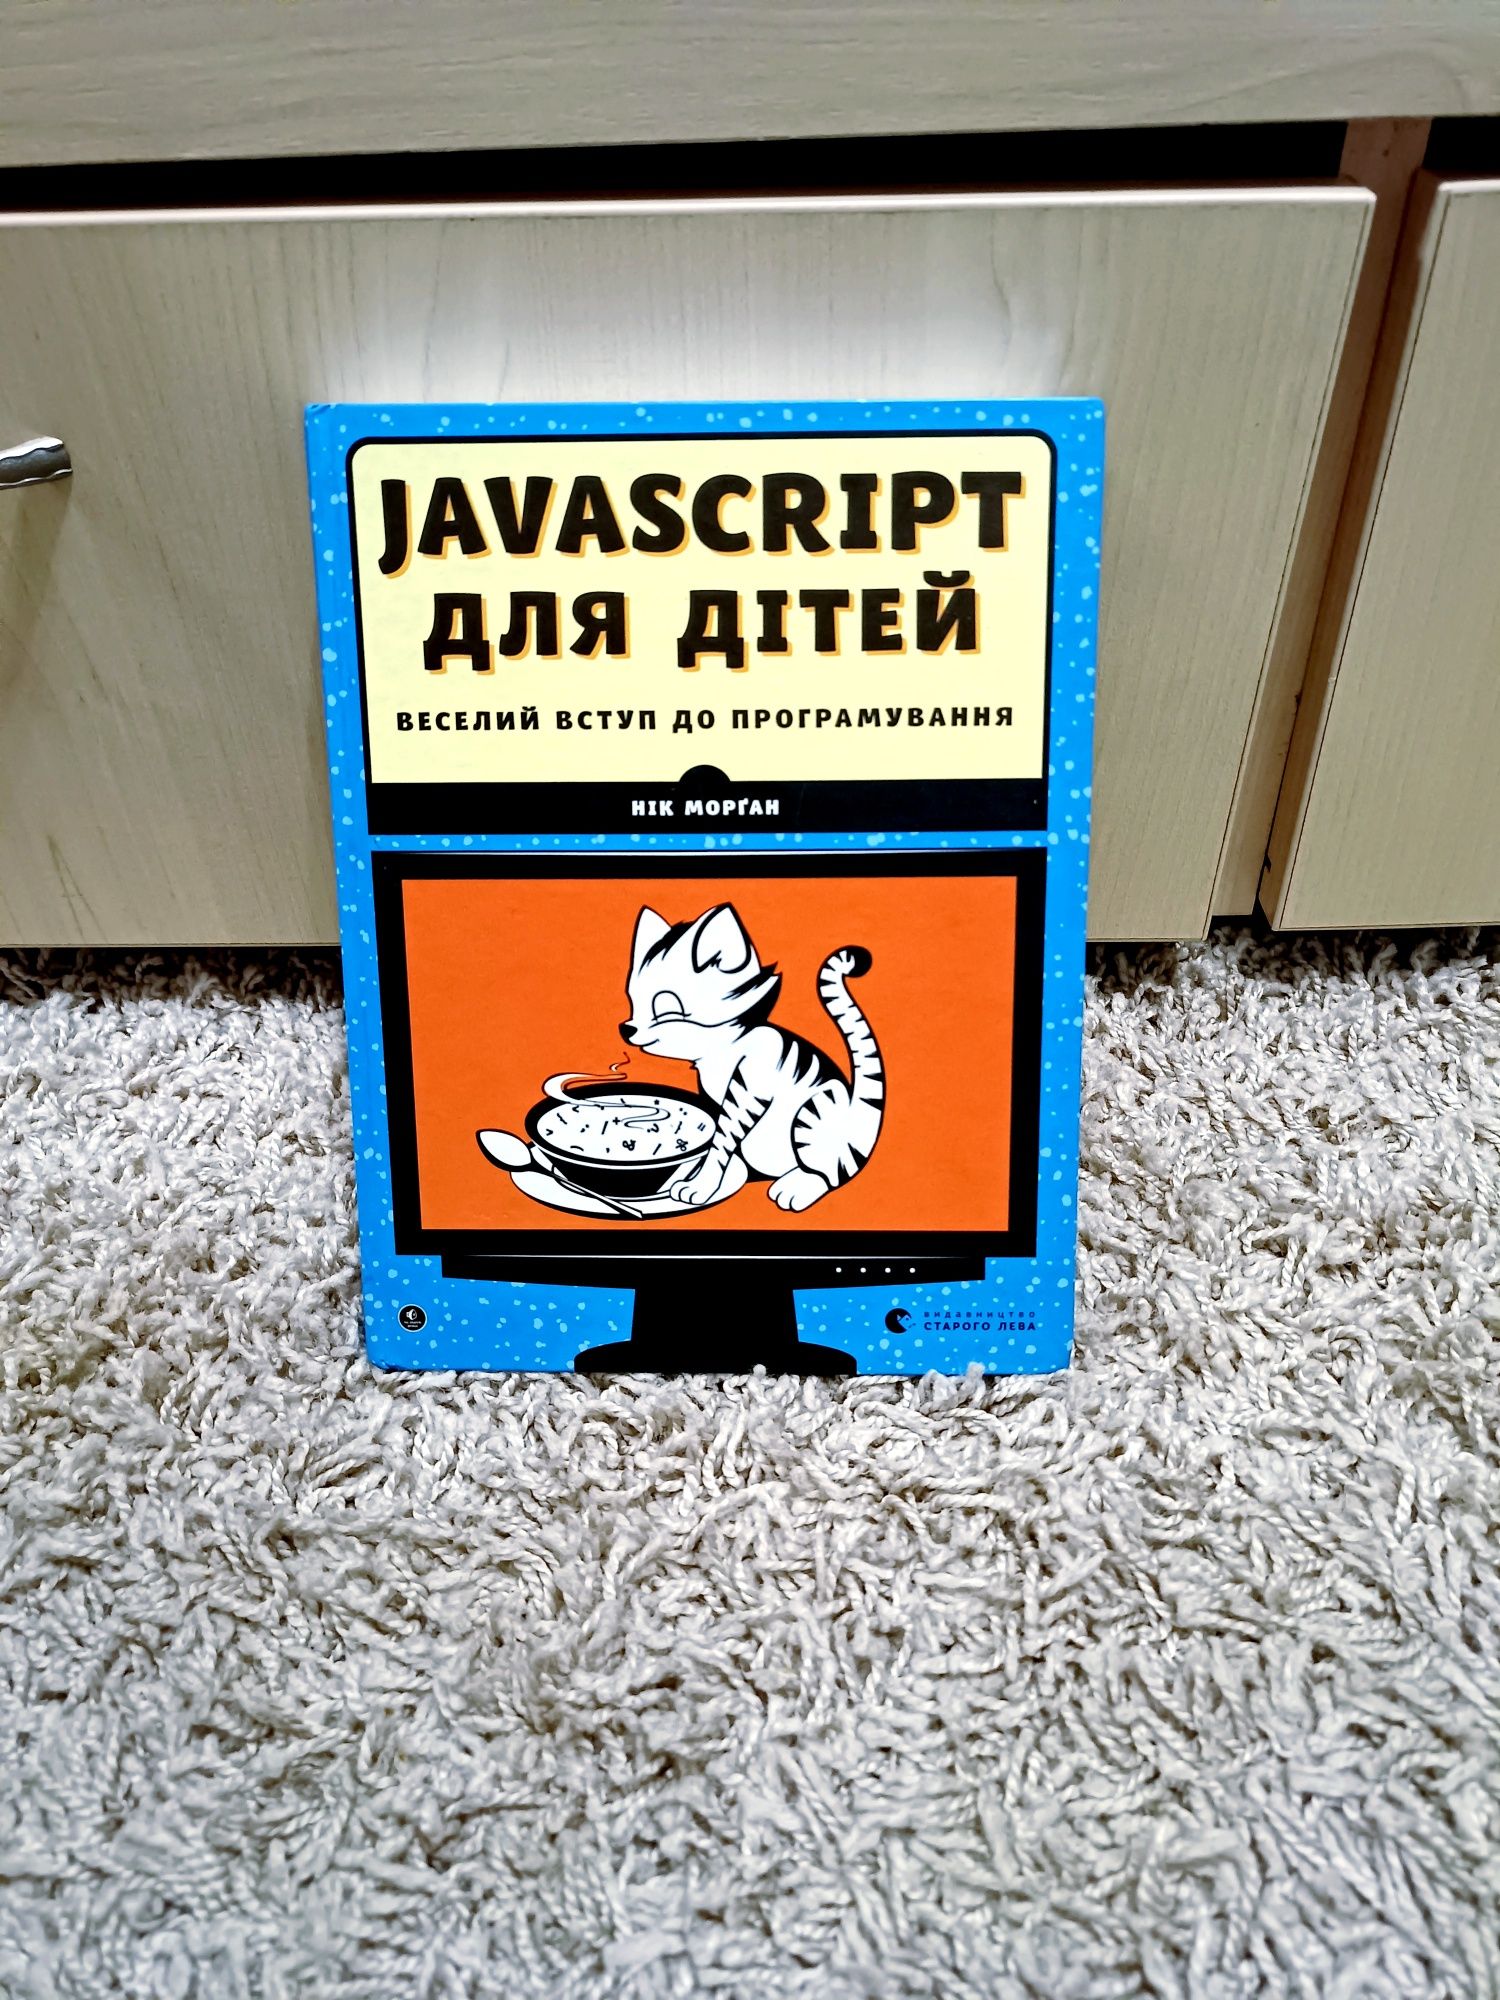 Javascript для дітей веселий вступ в програмування